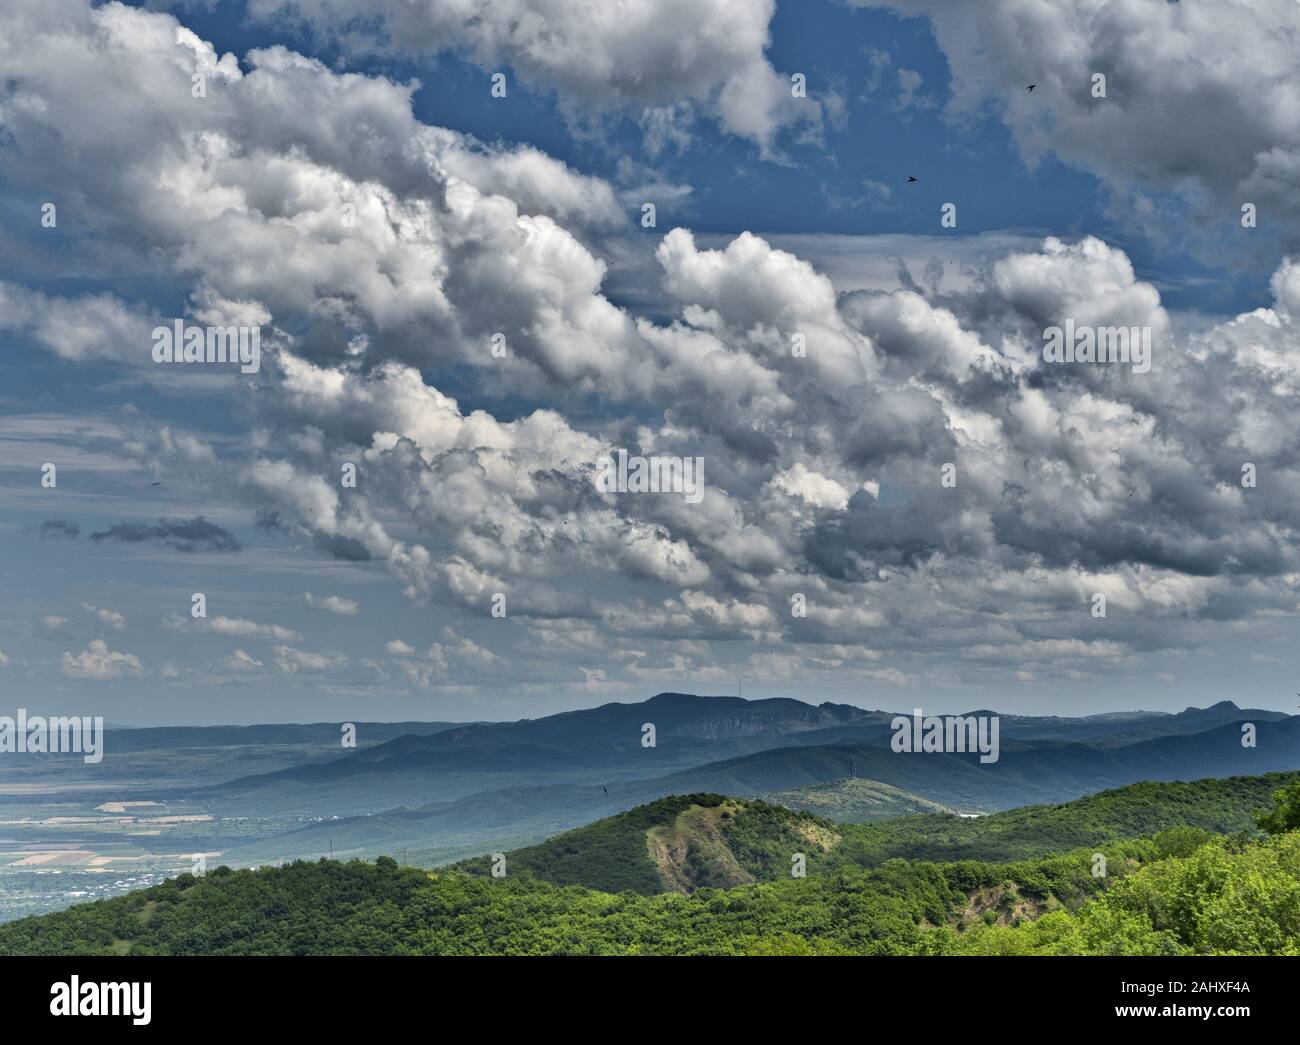 Las Golondrinas en el cielo contra un fondo de nubes blancas. Un verde paisaje de colinas con viñedos. Georgia. Espacio infinito Foto de stock